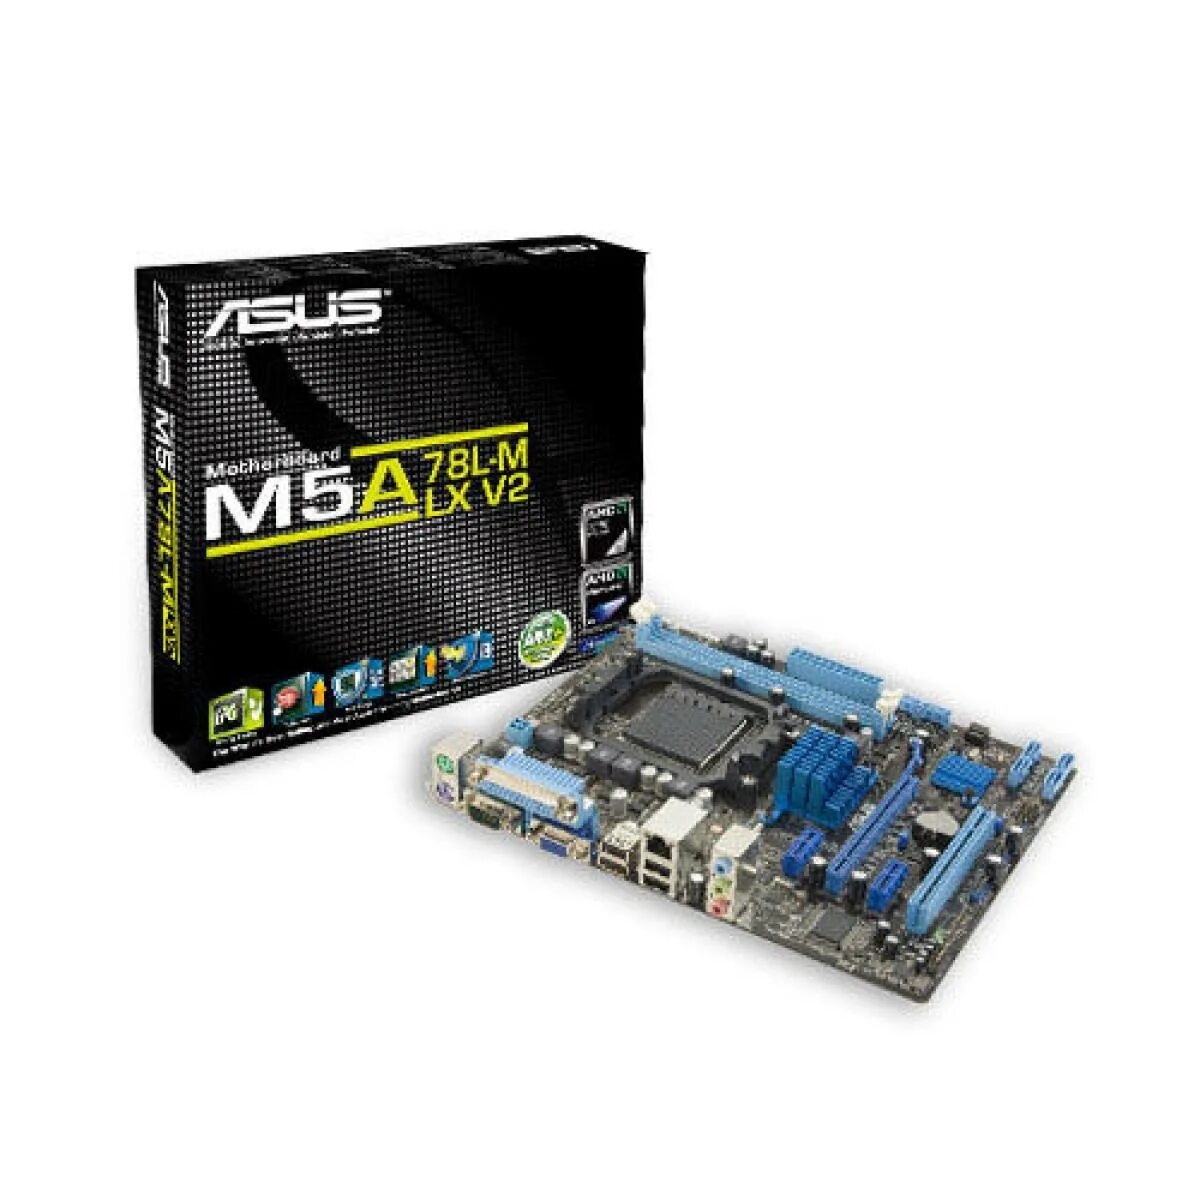 M5a78l m поддерживаемые процессоры. Материнская плата ASUS m5a78l-m. Материнская плата ASUS f1a55-m LX. ASUS m5a78l-m Plus/usb3. Материнская плата ASUS m5a78l-usb3 с оперативной памятью.